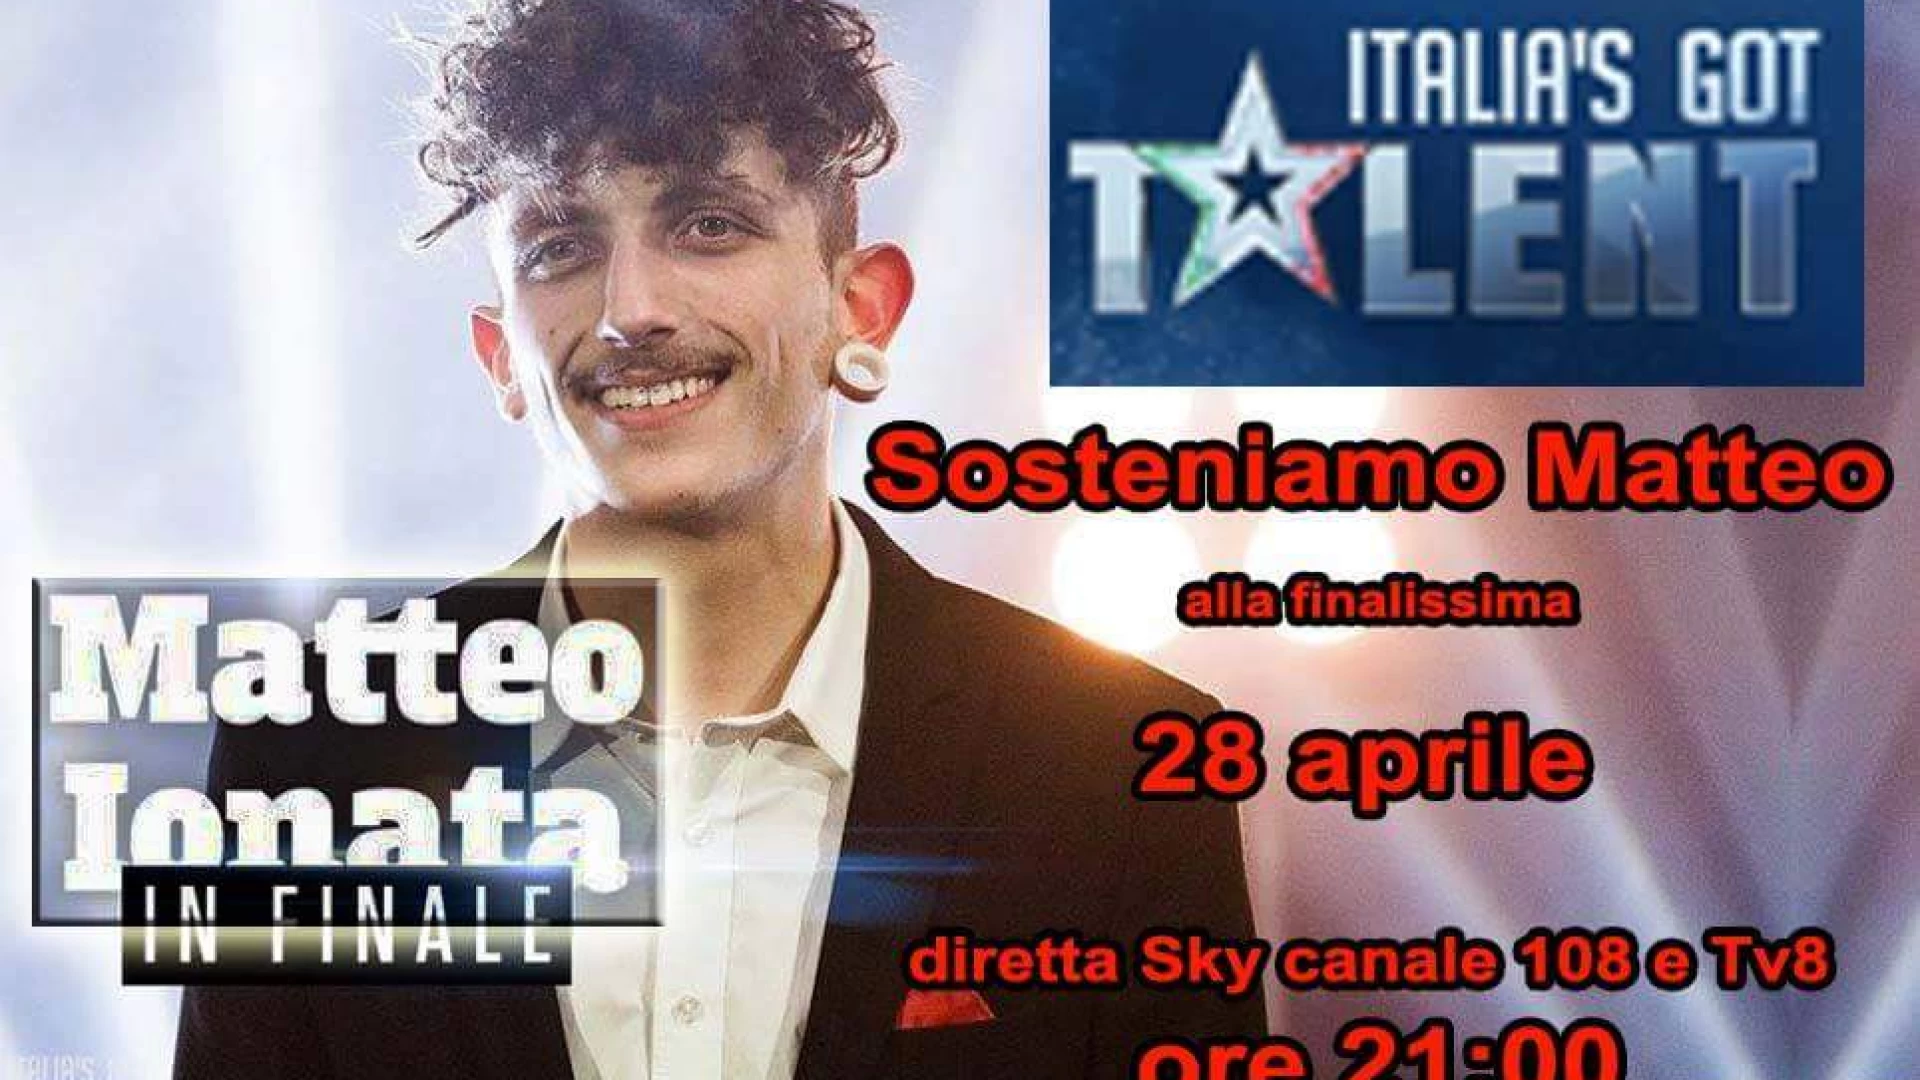 Sosteniamo Matteo Ionata alla finalissima di Italia’S Got Talent. Venerdì 28 aprile l’atteso appuntamento. Il Molise potrà aiutarlo con il televoto.